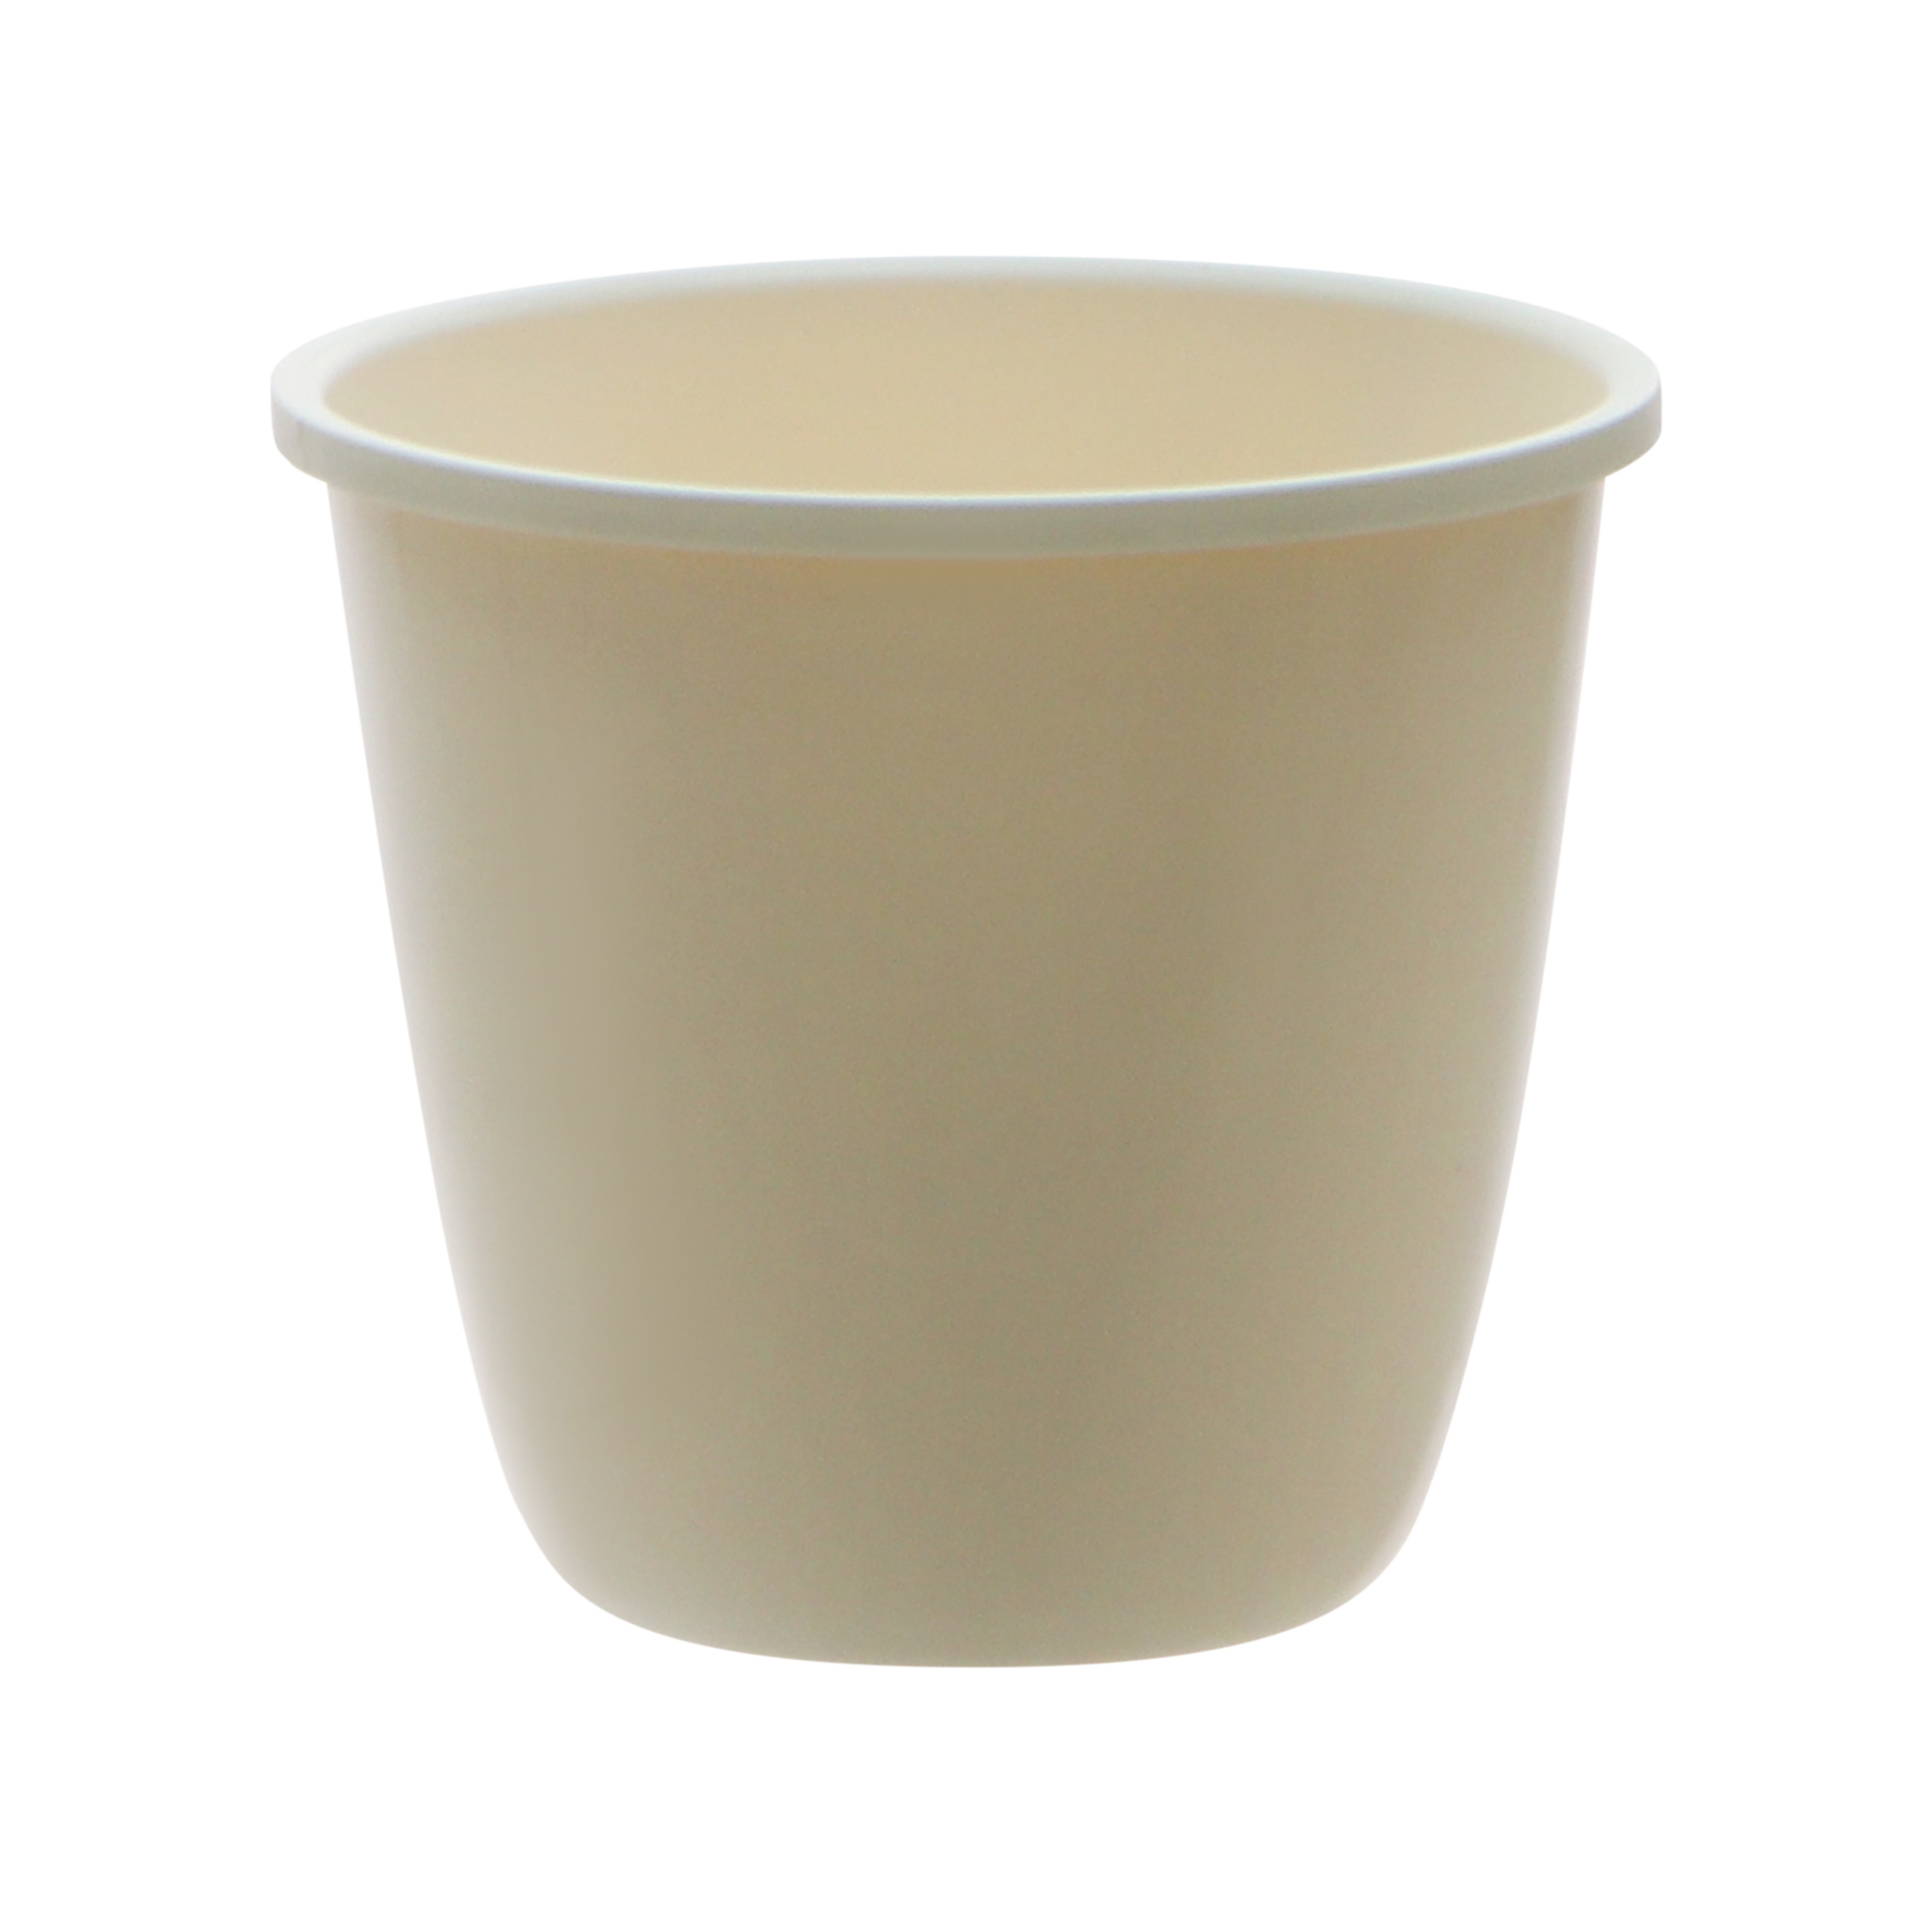 Кашпо Prosperplast splofy bowl 18см кремовое, цвет кремовый - фото 2